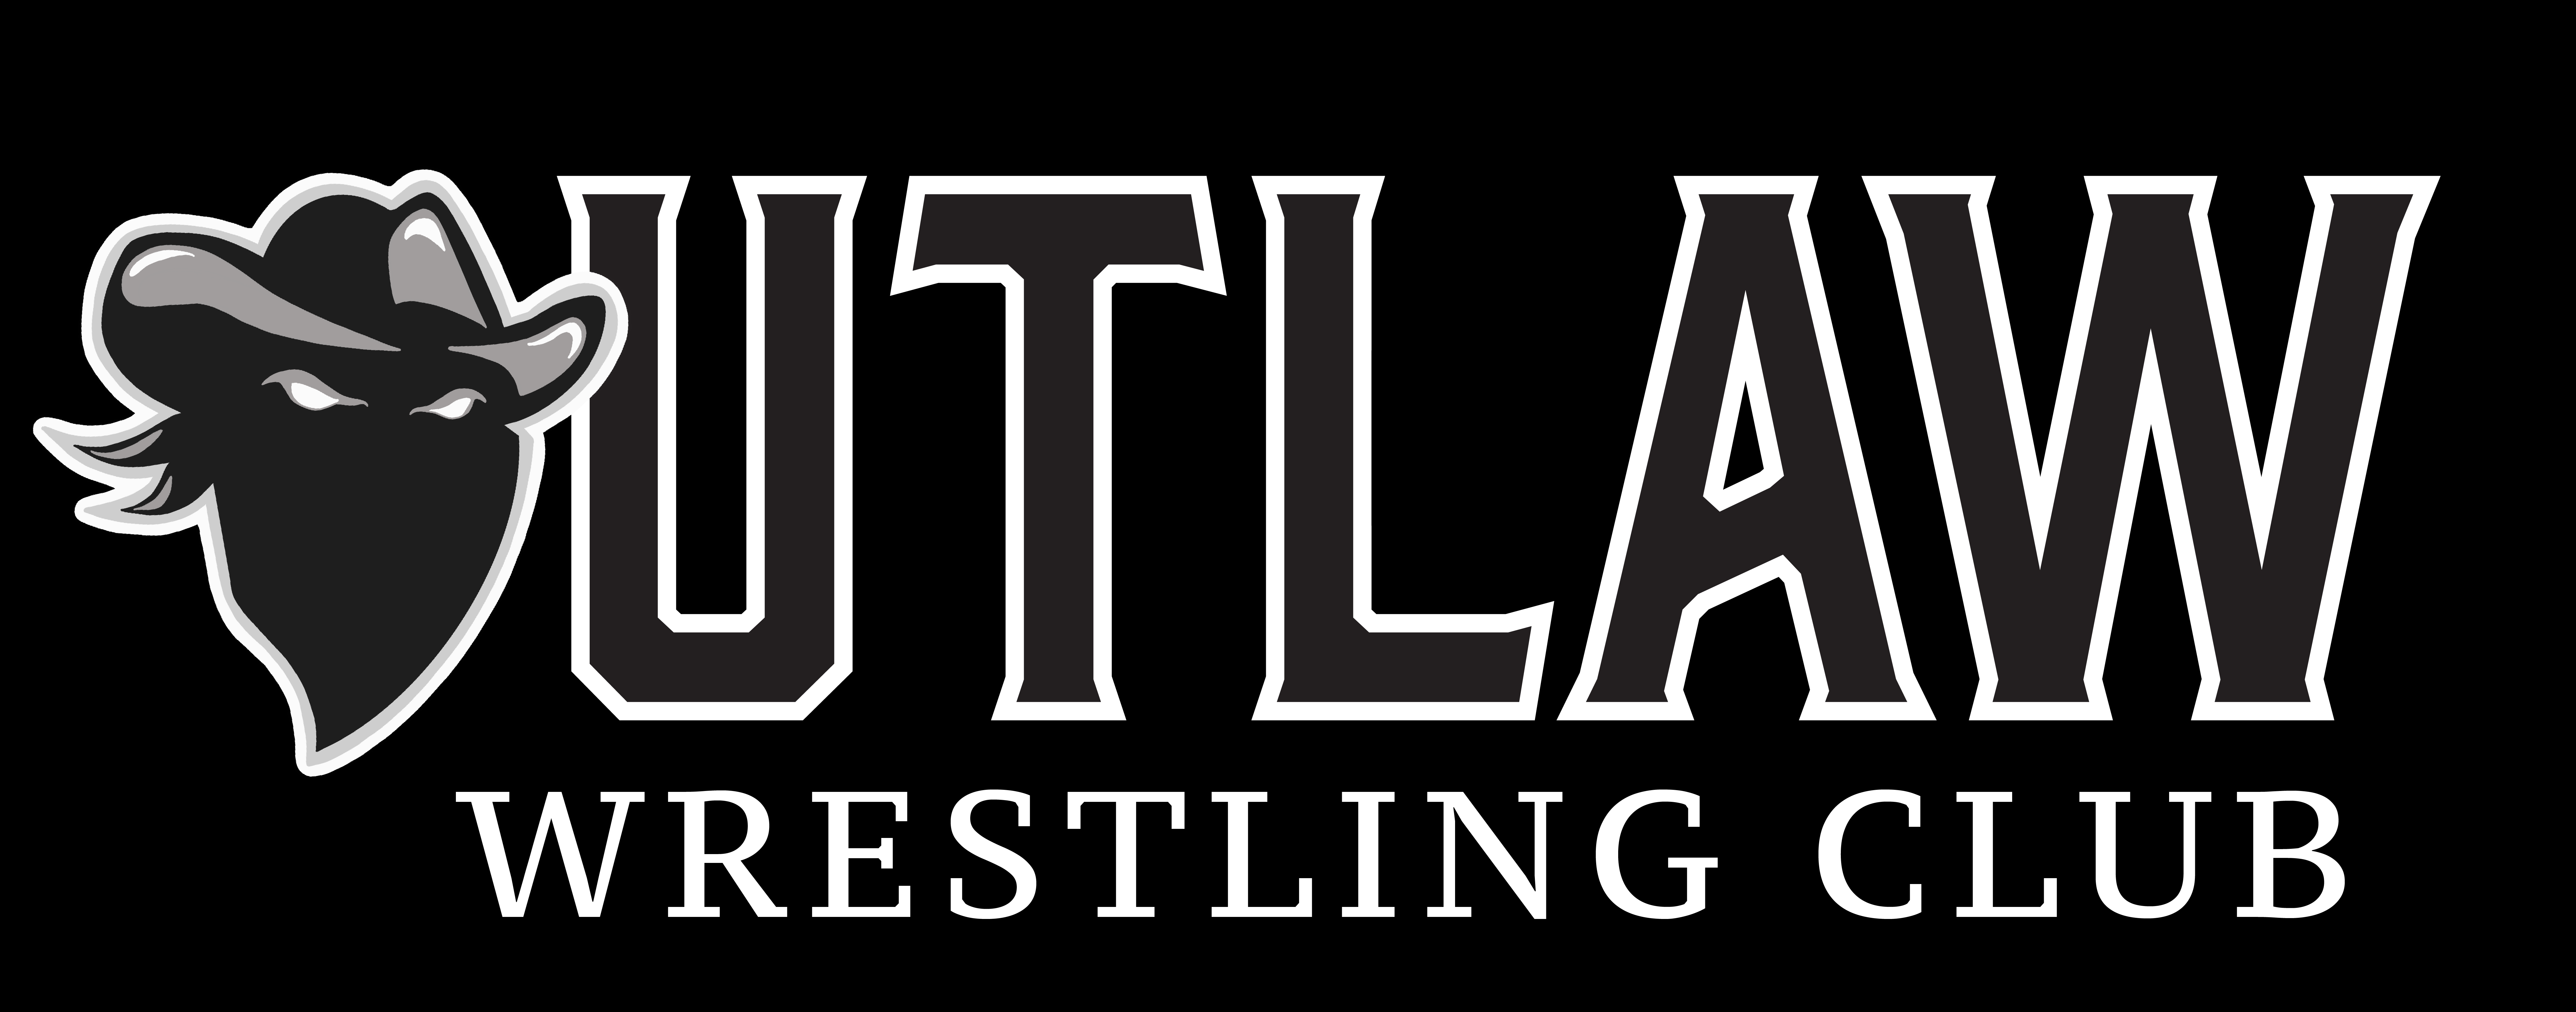 Outlaw Wrestling Club